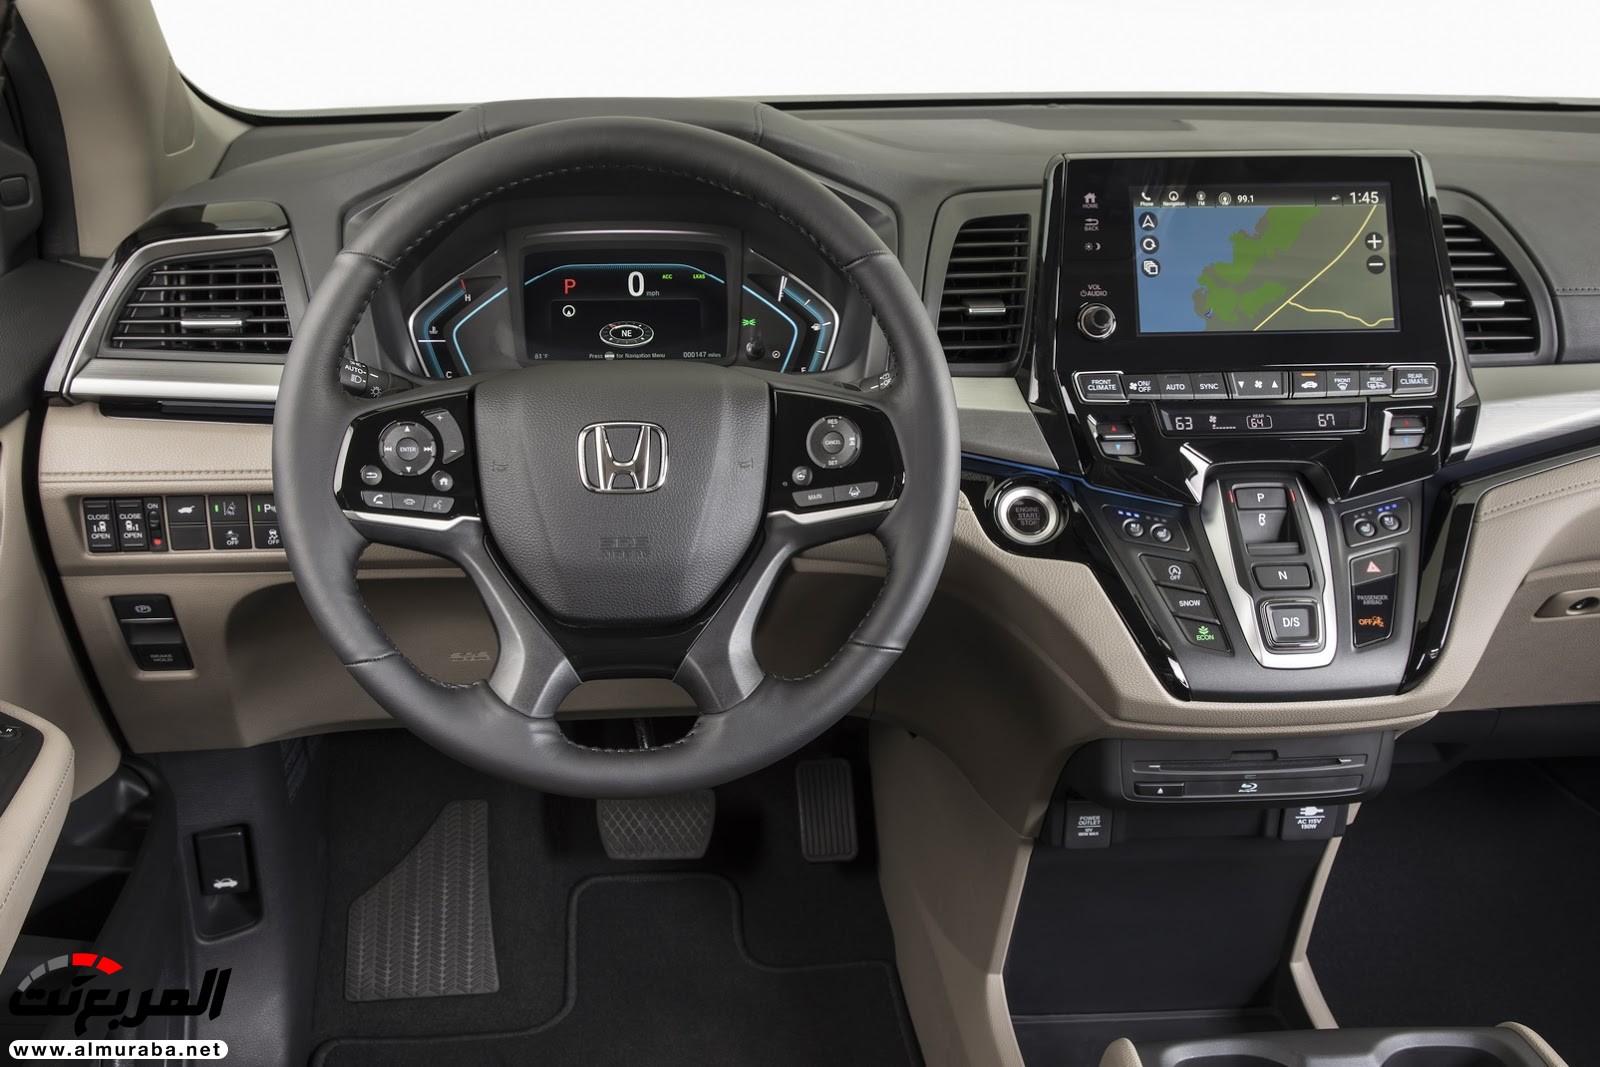 هوندا اوديسي 2018 تحصل على تقنيات جديدة وتحديثات خارجية وداخلية + صور وتقرير Honda Odyssey 80